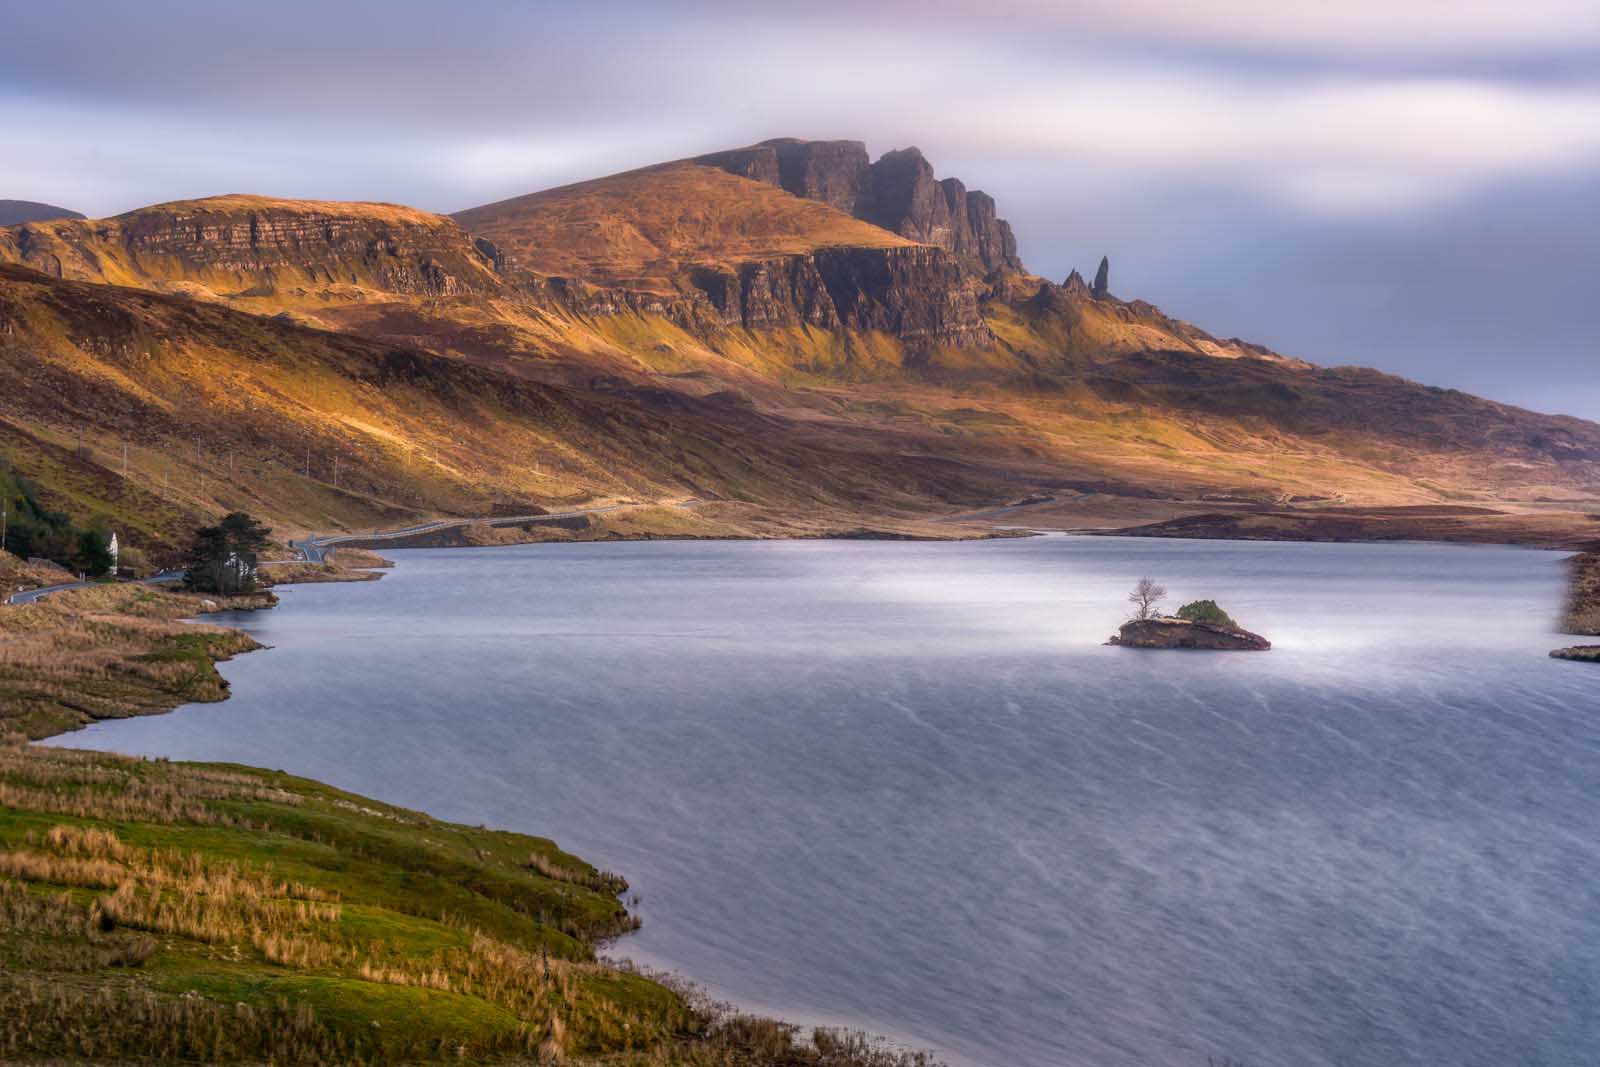 Isle of Skye in Scotland